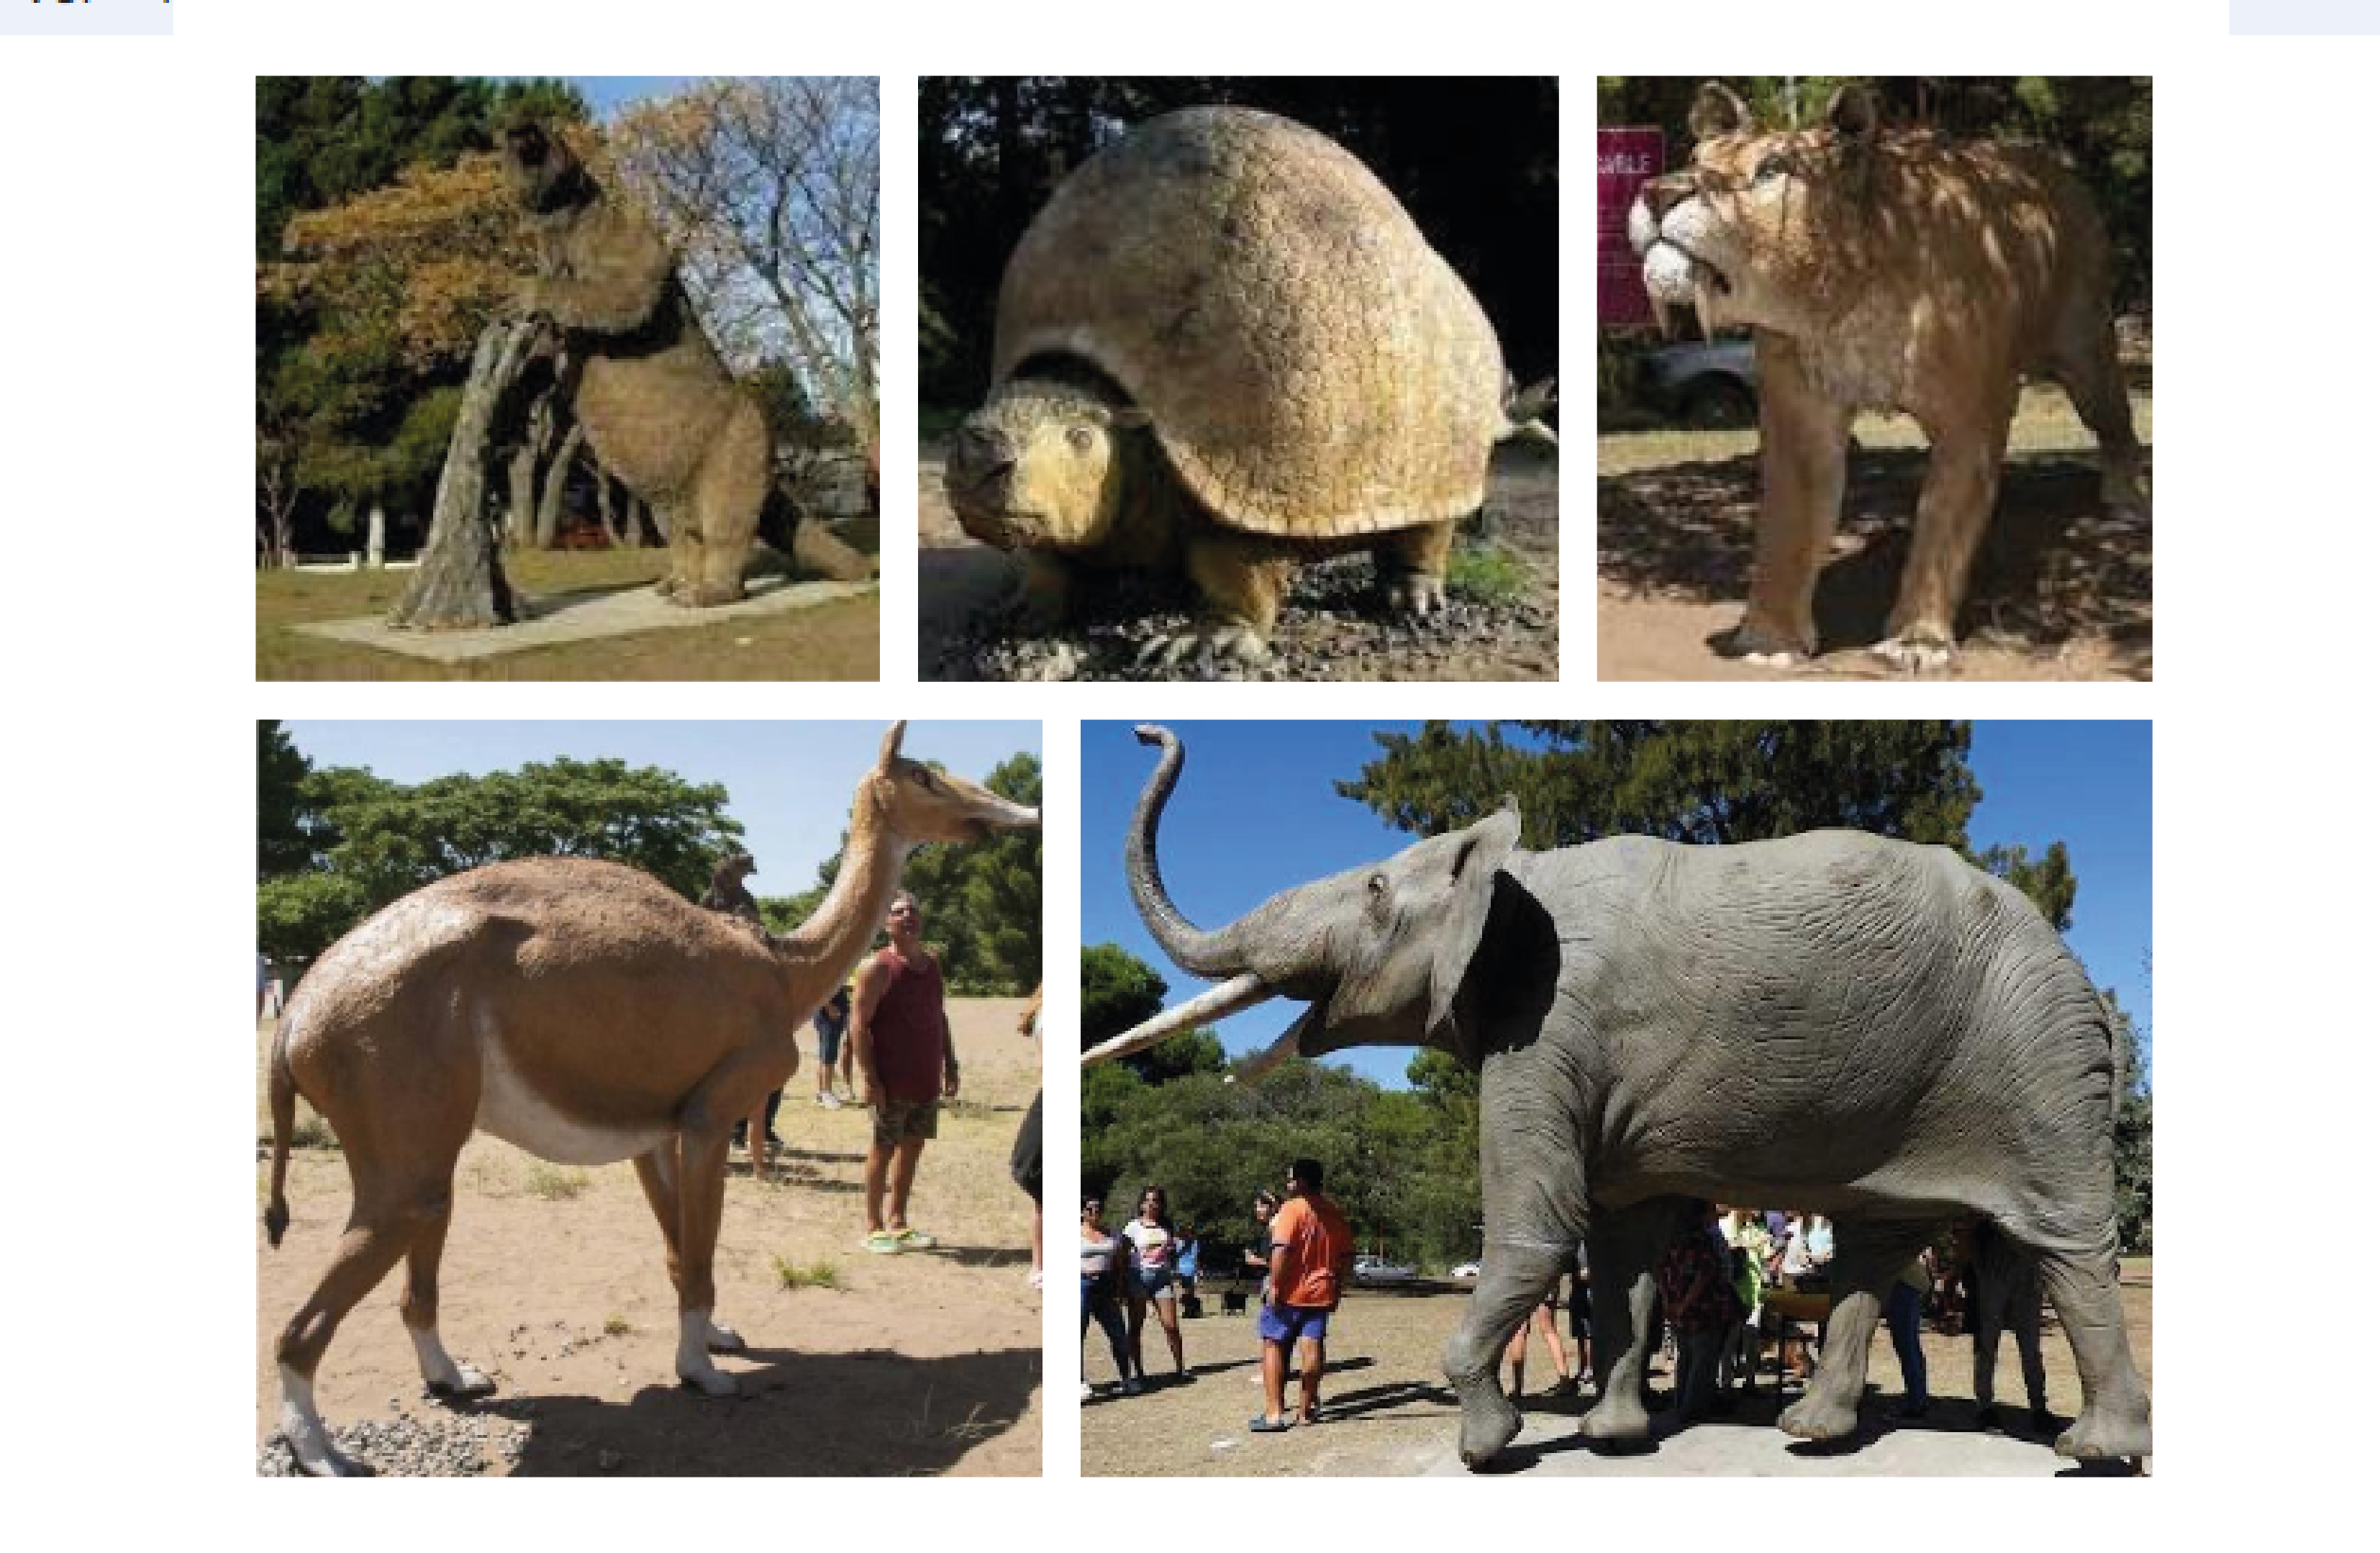 Réplicas de animales extintos ubicados en
el parque temático.